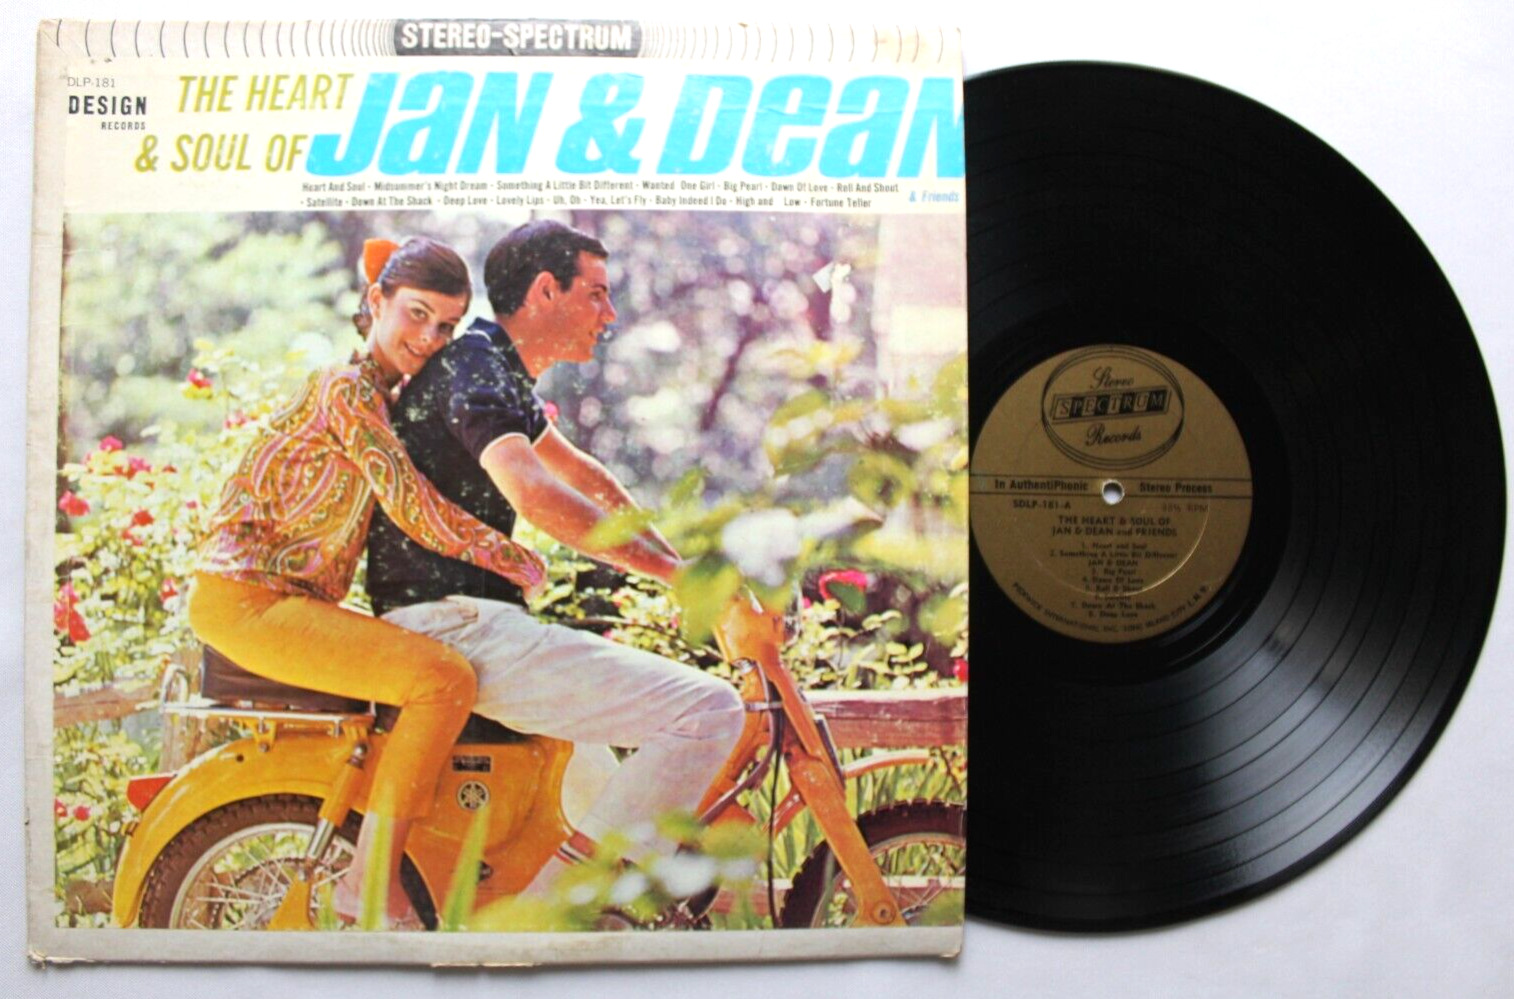 THE HEART & SOUL OF JAN & DEAN LP 12" VINYL RECORD (SDLP-181)